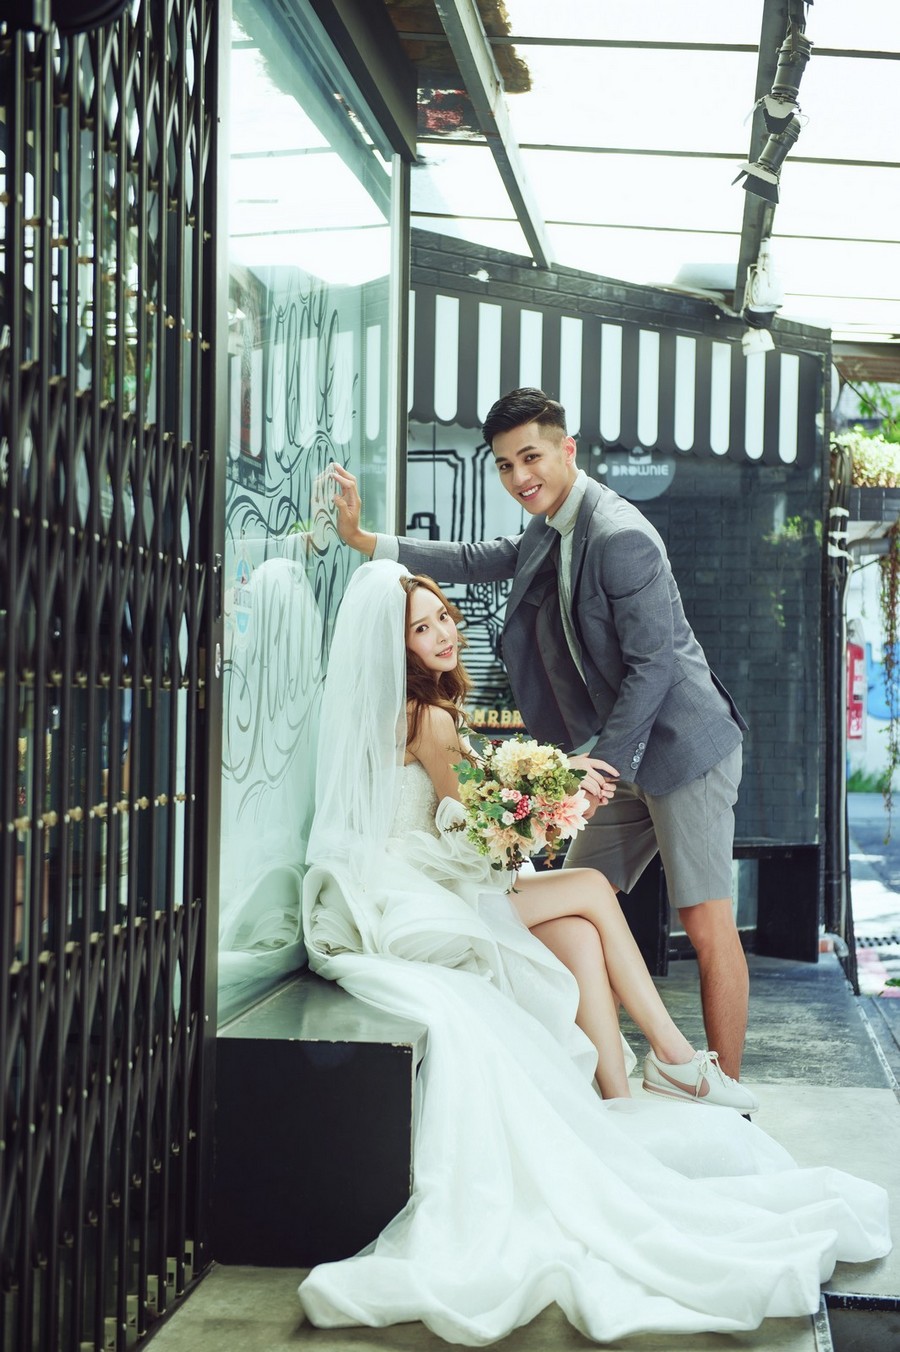 婚紗照推薦 台南,童趣婚紗照 台南,自助婚紗攝影 台南